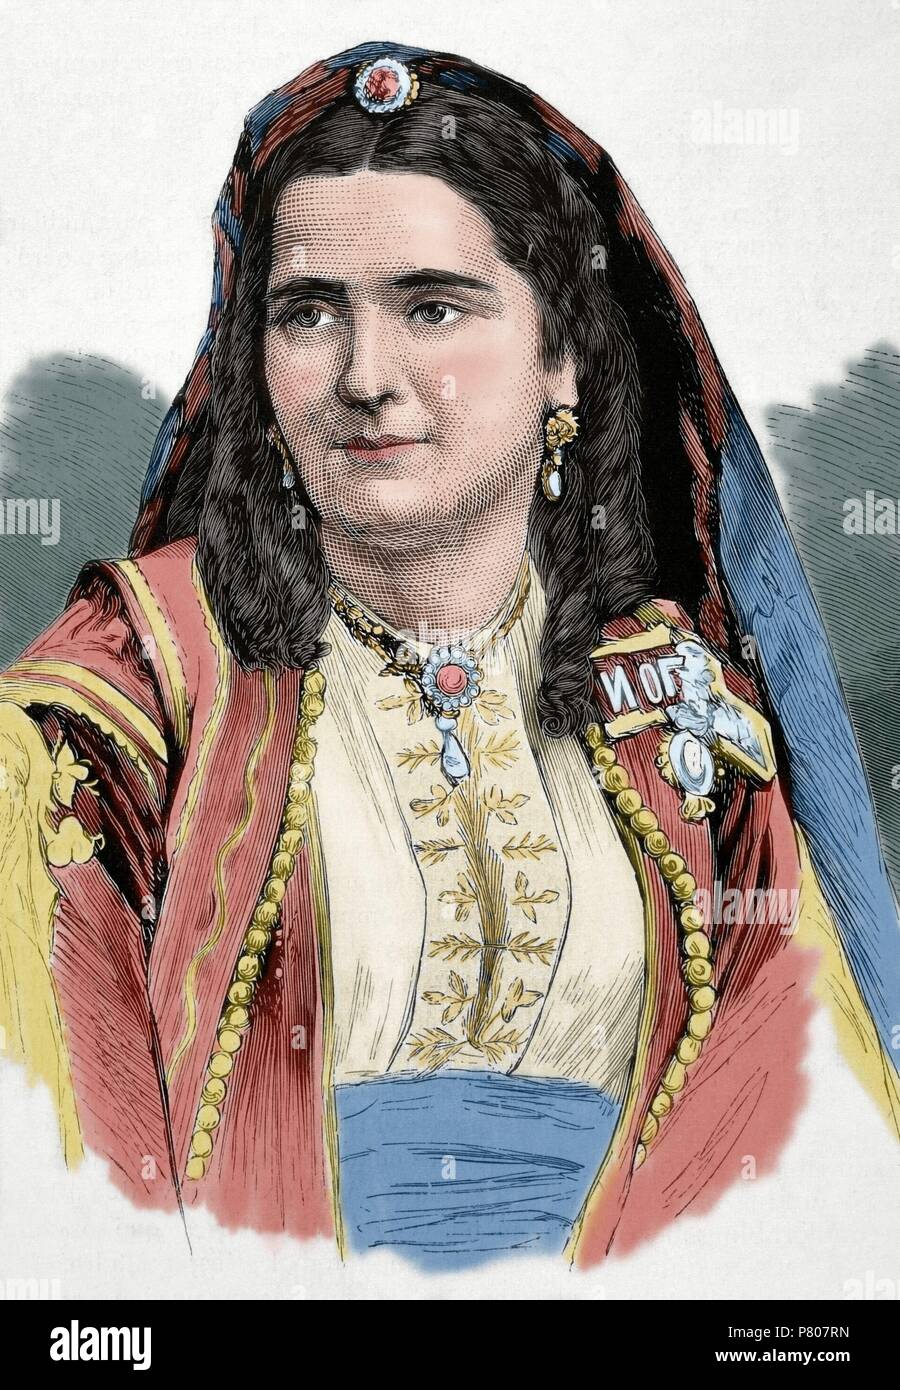 Milena Vukotic (1847-1923). Queen Consort of Montenegro, as wife of King Nicholas I of Montenegro (1920-1918). Portrait. Engraved by Paris in 'La Ilustracio n espan ola y americana', 1875. Colored. Stock Photo